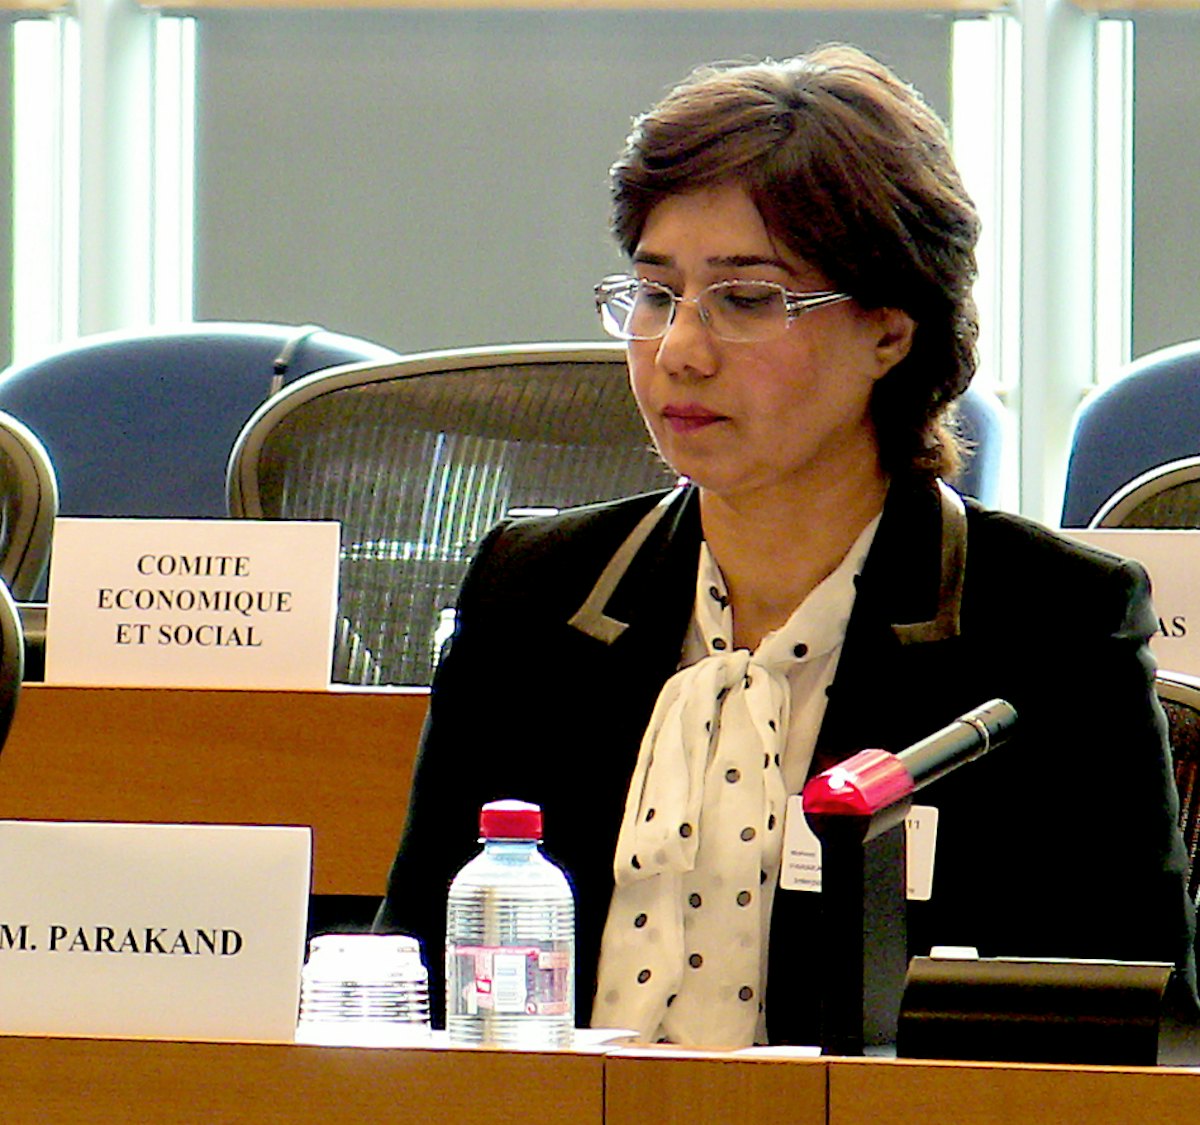 مهناز پراکند، یکی از وکیلان هفت رهبر بهائی زندانی در ایران در جلسه ای که در پارلمان اروپا در بروکسل به تاریخ ۲۸ ژوئن ۲۰۱۱ برگزار شد، سخنرانی کرد.